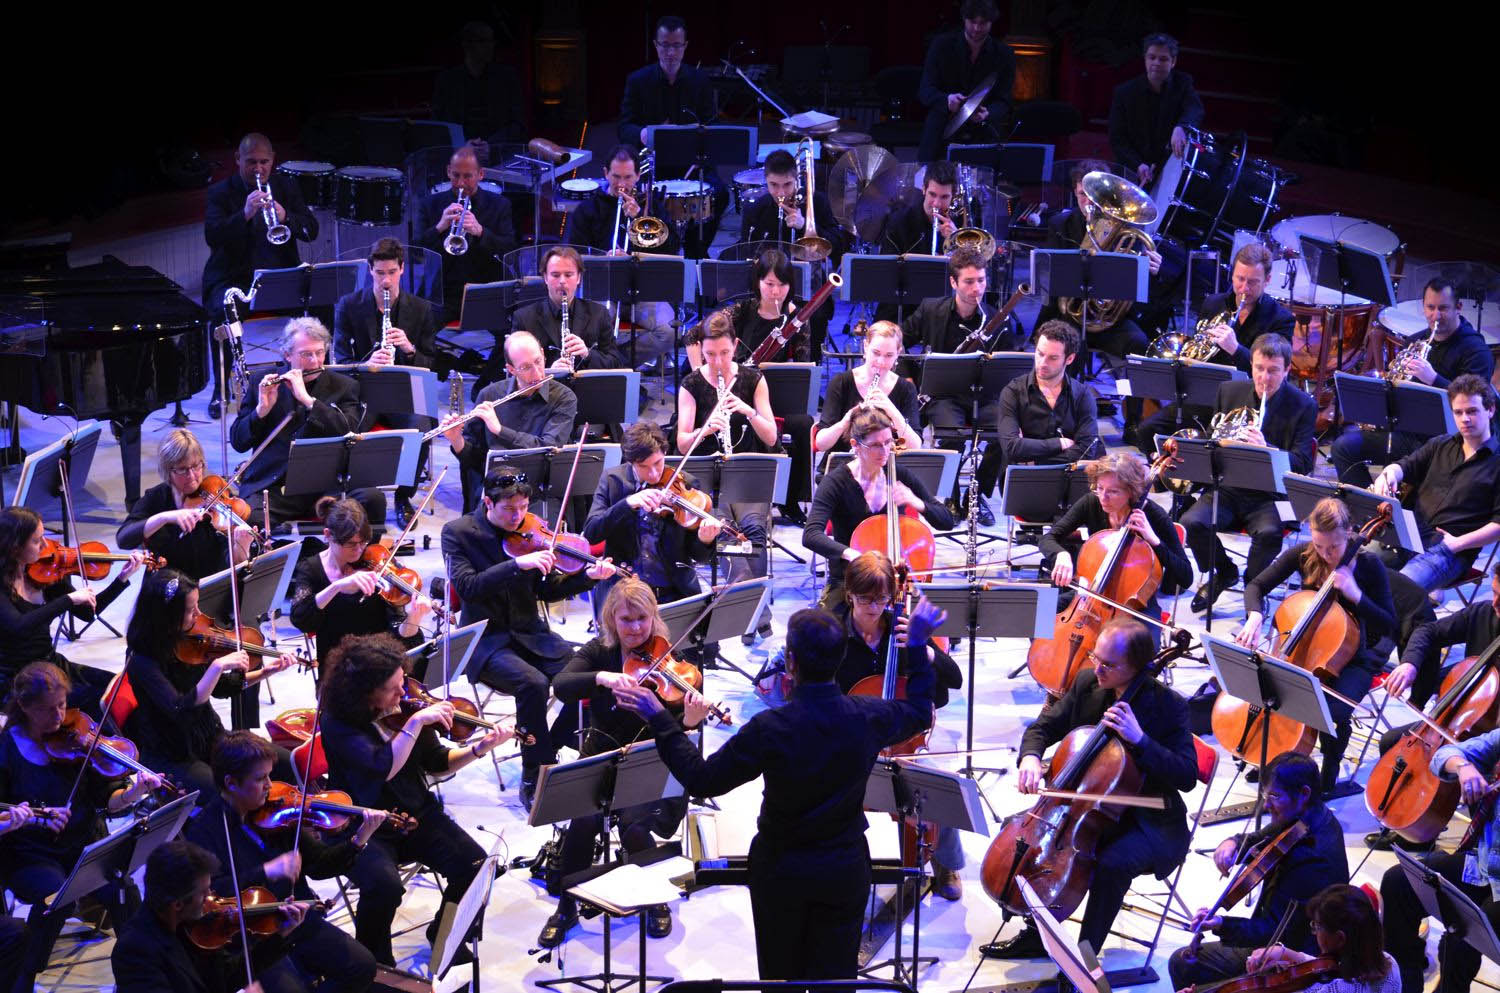 Le paraître en concert Orchestre%20Lamoureux%206%20Copyright%20Rouge%20202%20-%20JMDestang